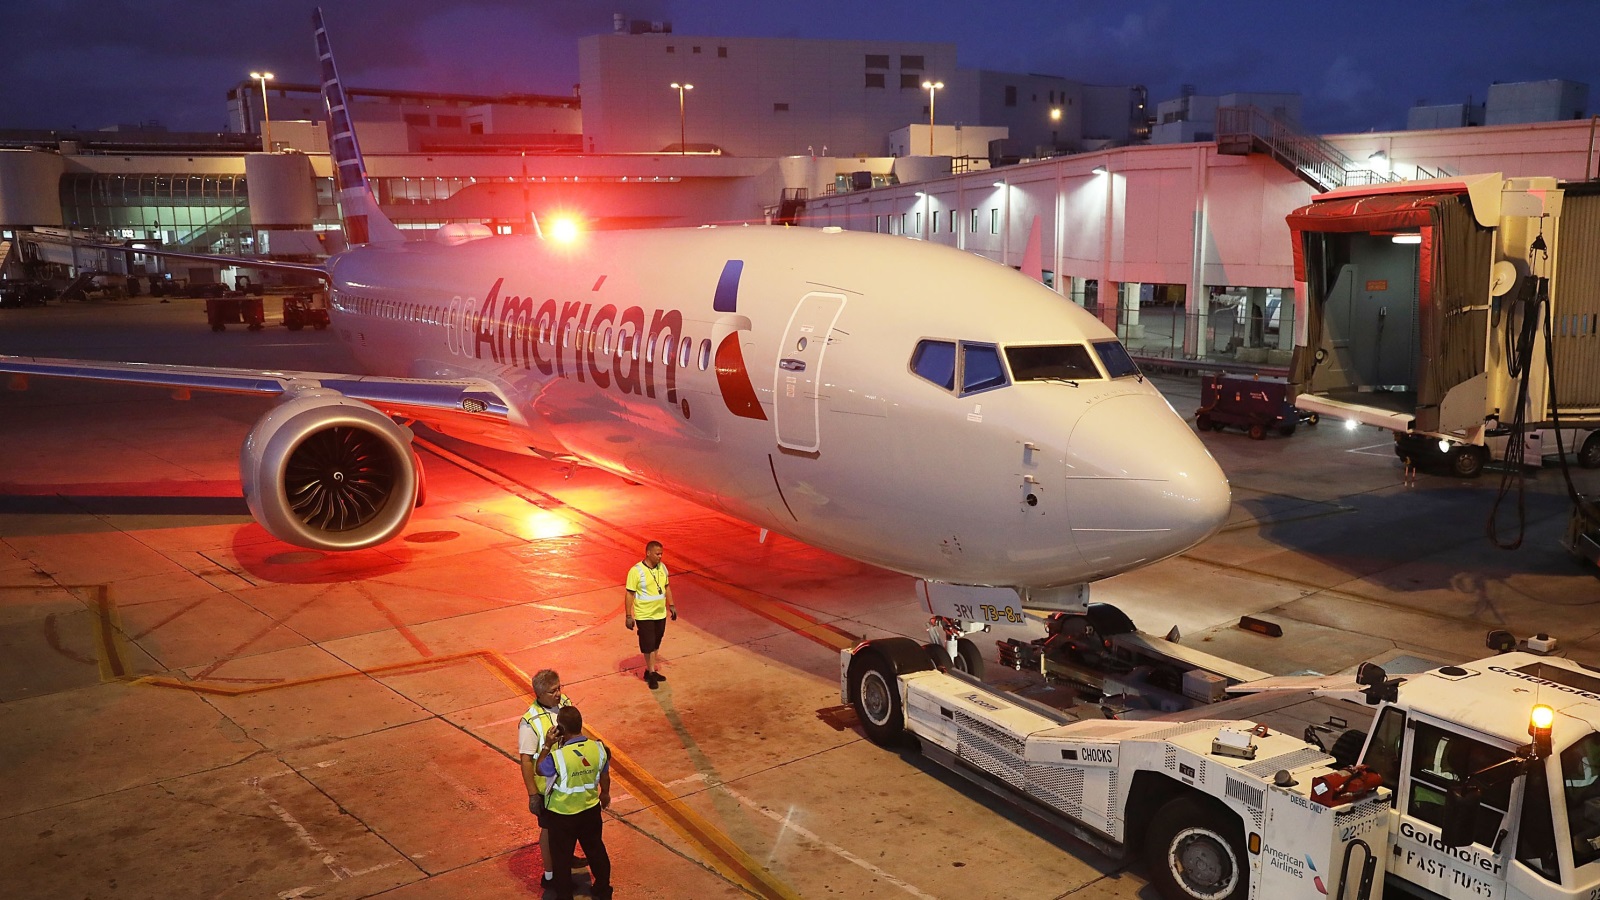 ‪طائرة بوينغ 737 موقفة عن العمل تابعة للخطوط الأميركية في مطار ميامي الدولي‬ طائرة بوينغ 737 موقفة عن العمل تابعة للخطوط الأميركية في مطار ميامي الدولي (الفرنسية)